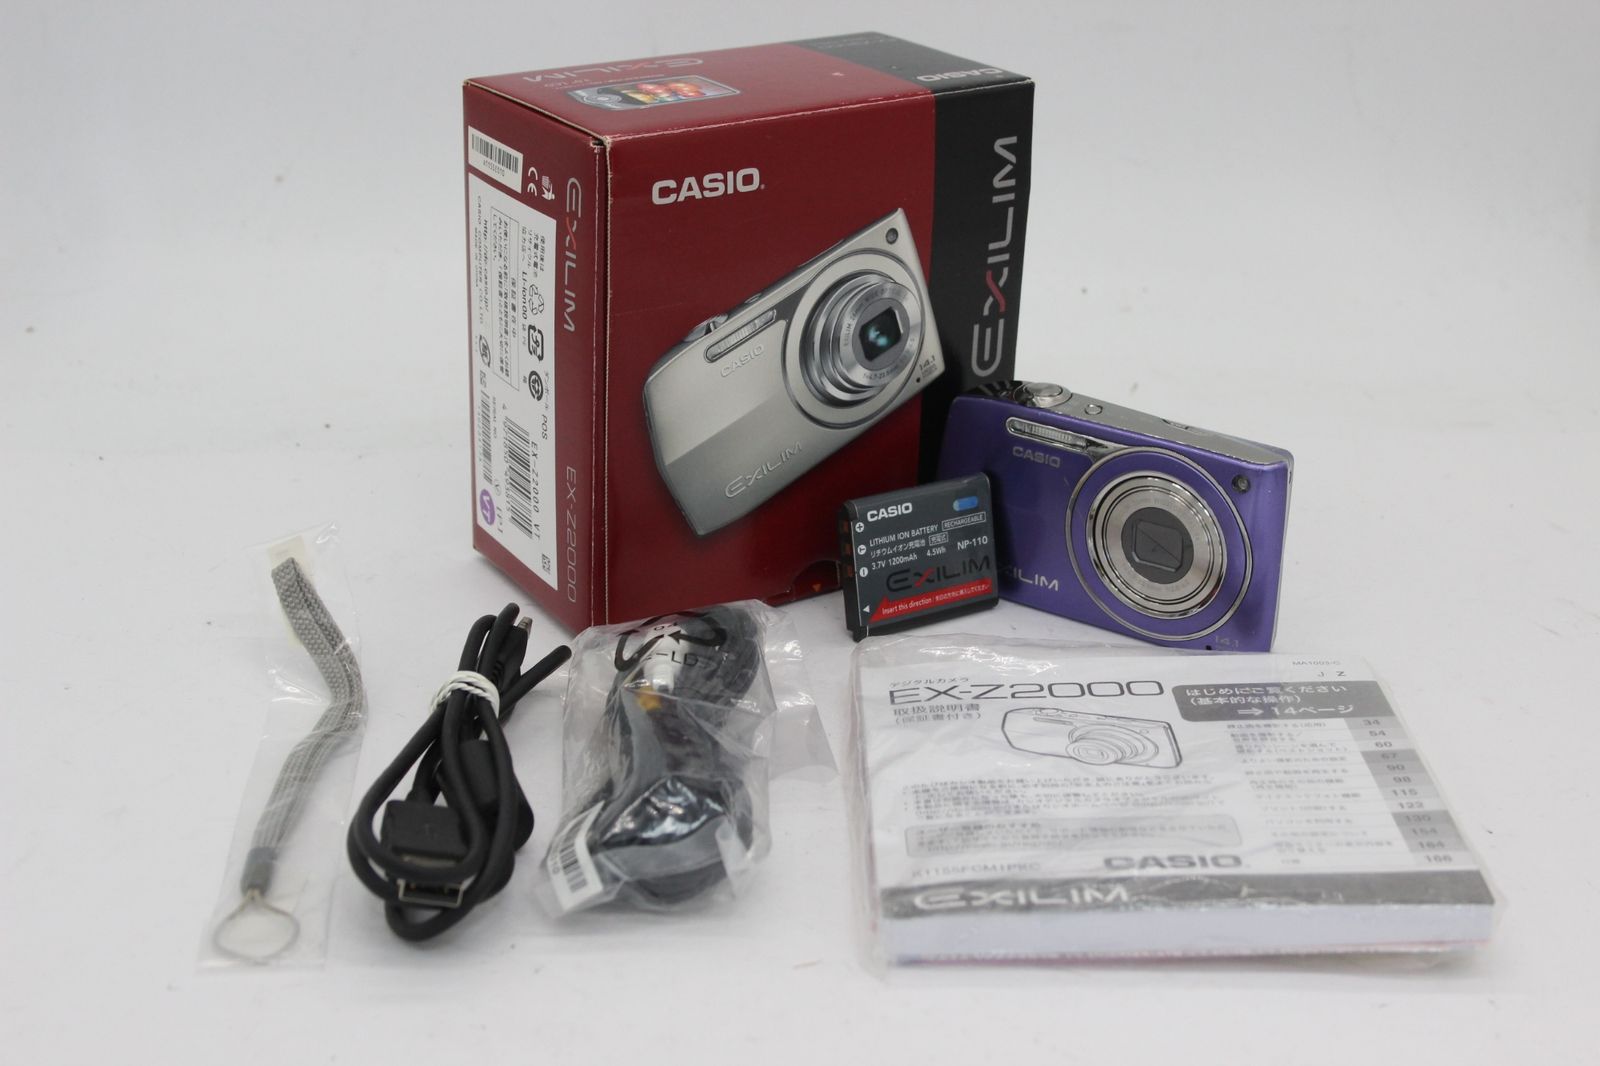 【返品保証】 【元箱付き】カシオ Casio Exilim EX-Z2000 ヴァイオレット 5x バッテリー付き コンパクトデジタルカメラ v907